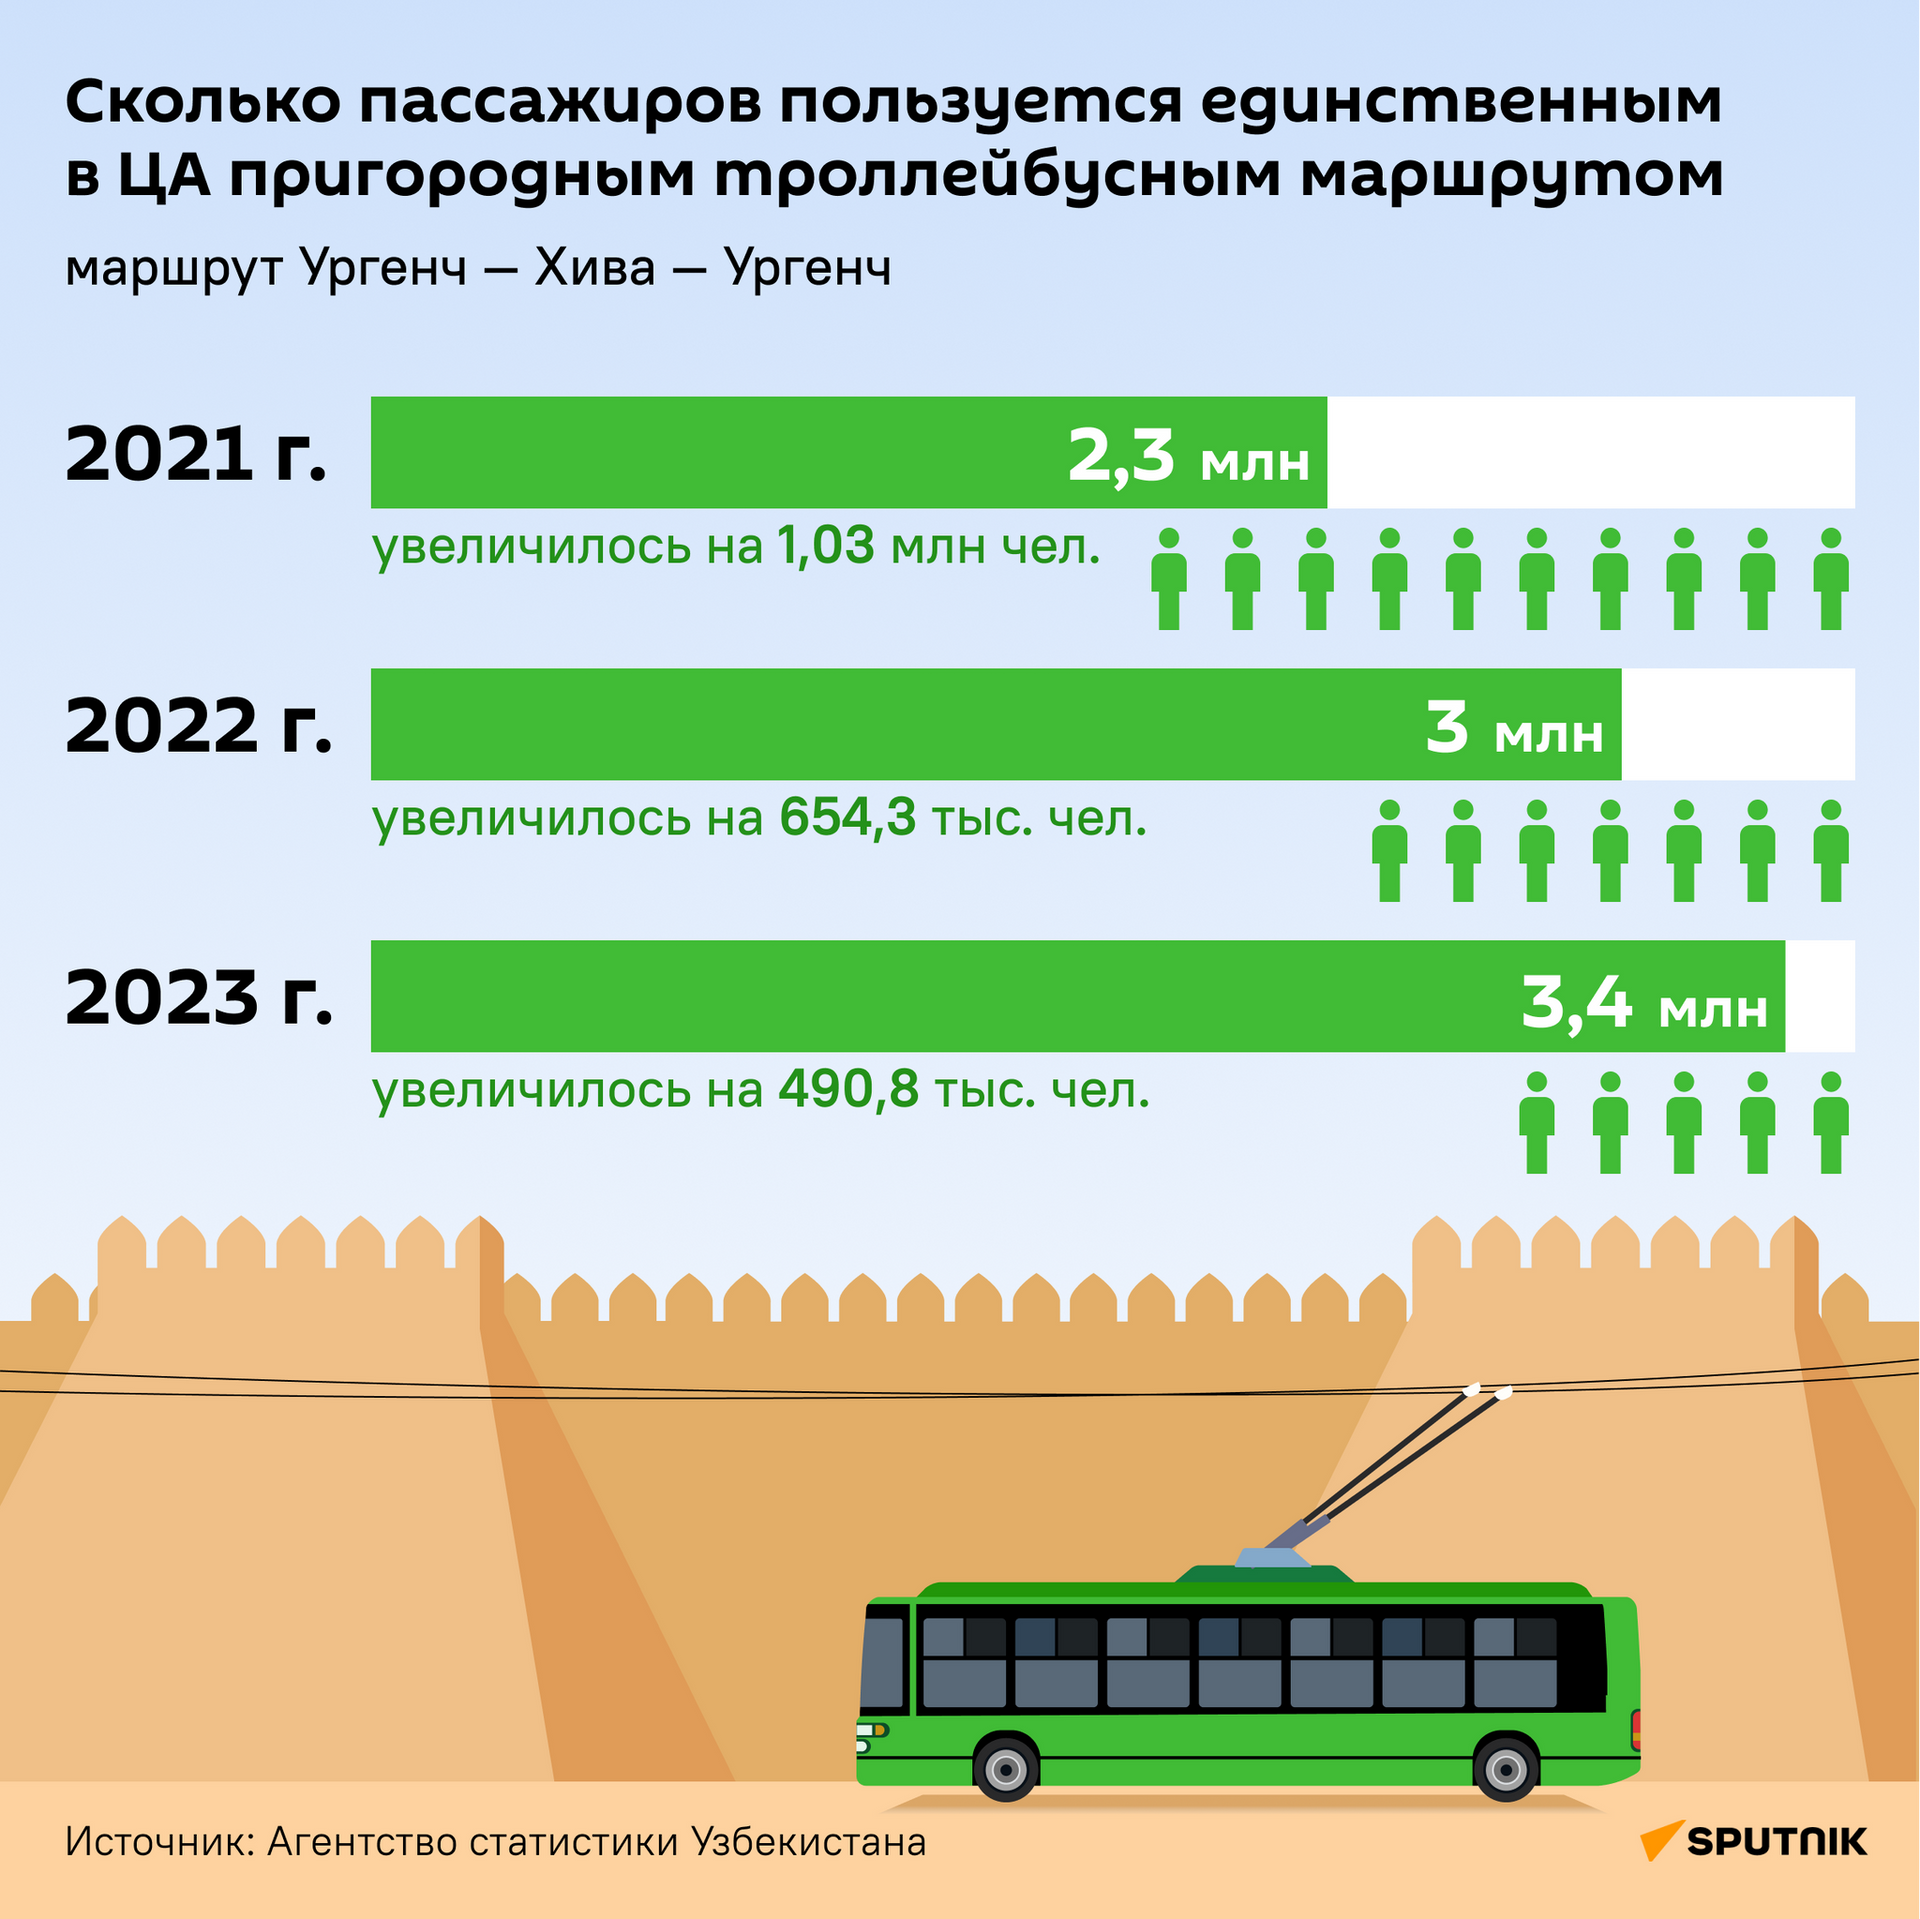 Сколько пассажиров пользуется единственным в ЦА пригородным троллейбусным маршрутом - Sputnik Узбекистан, 1920, 30.01.2024